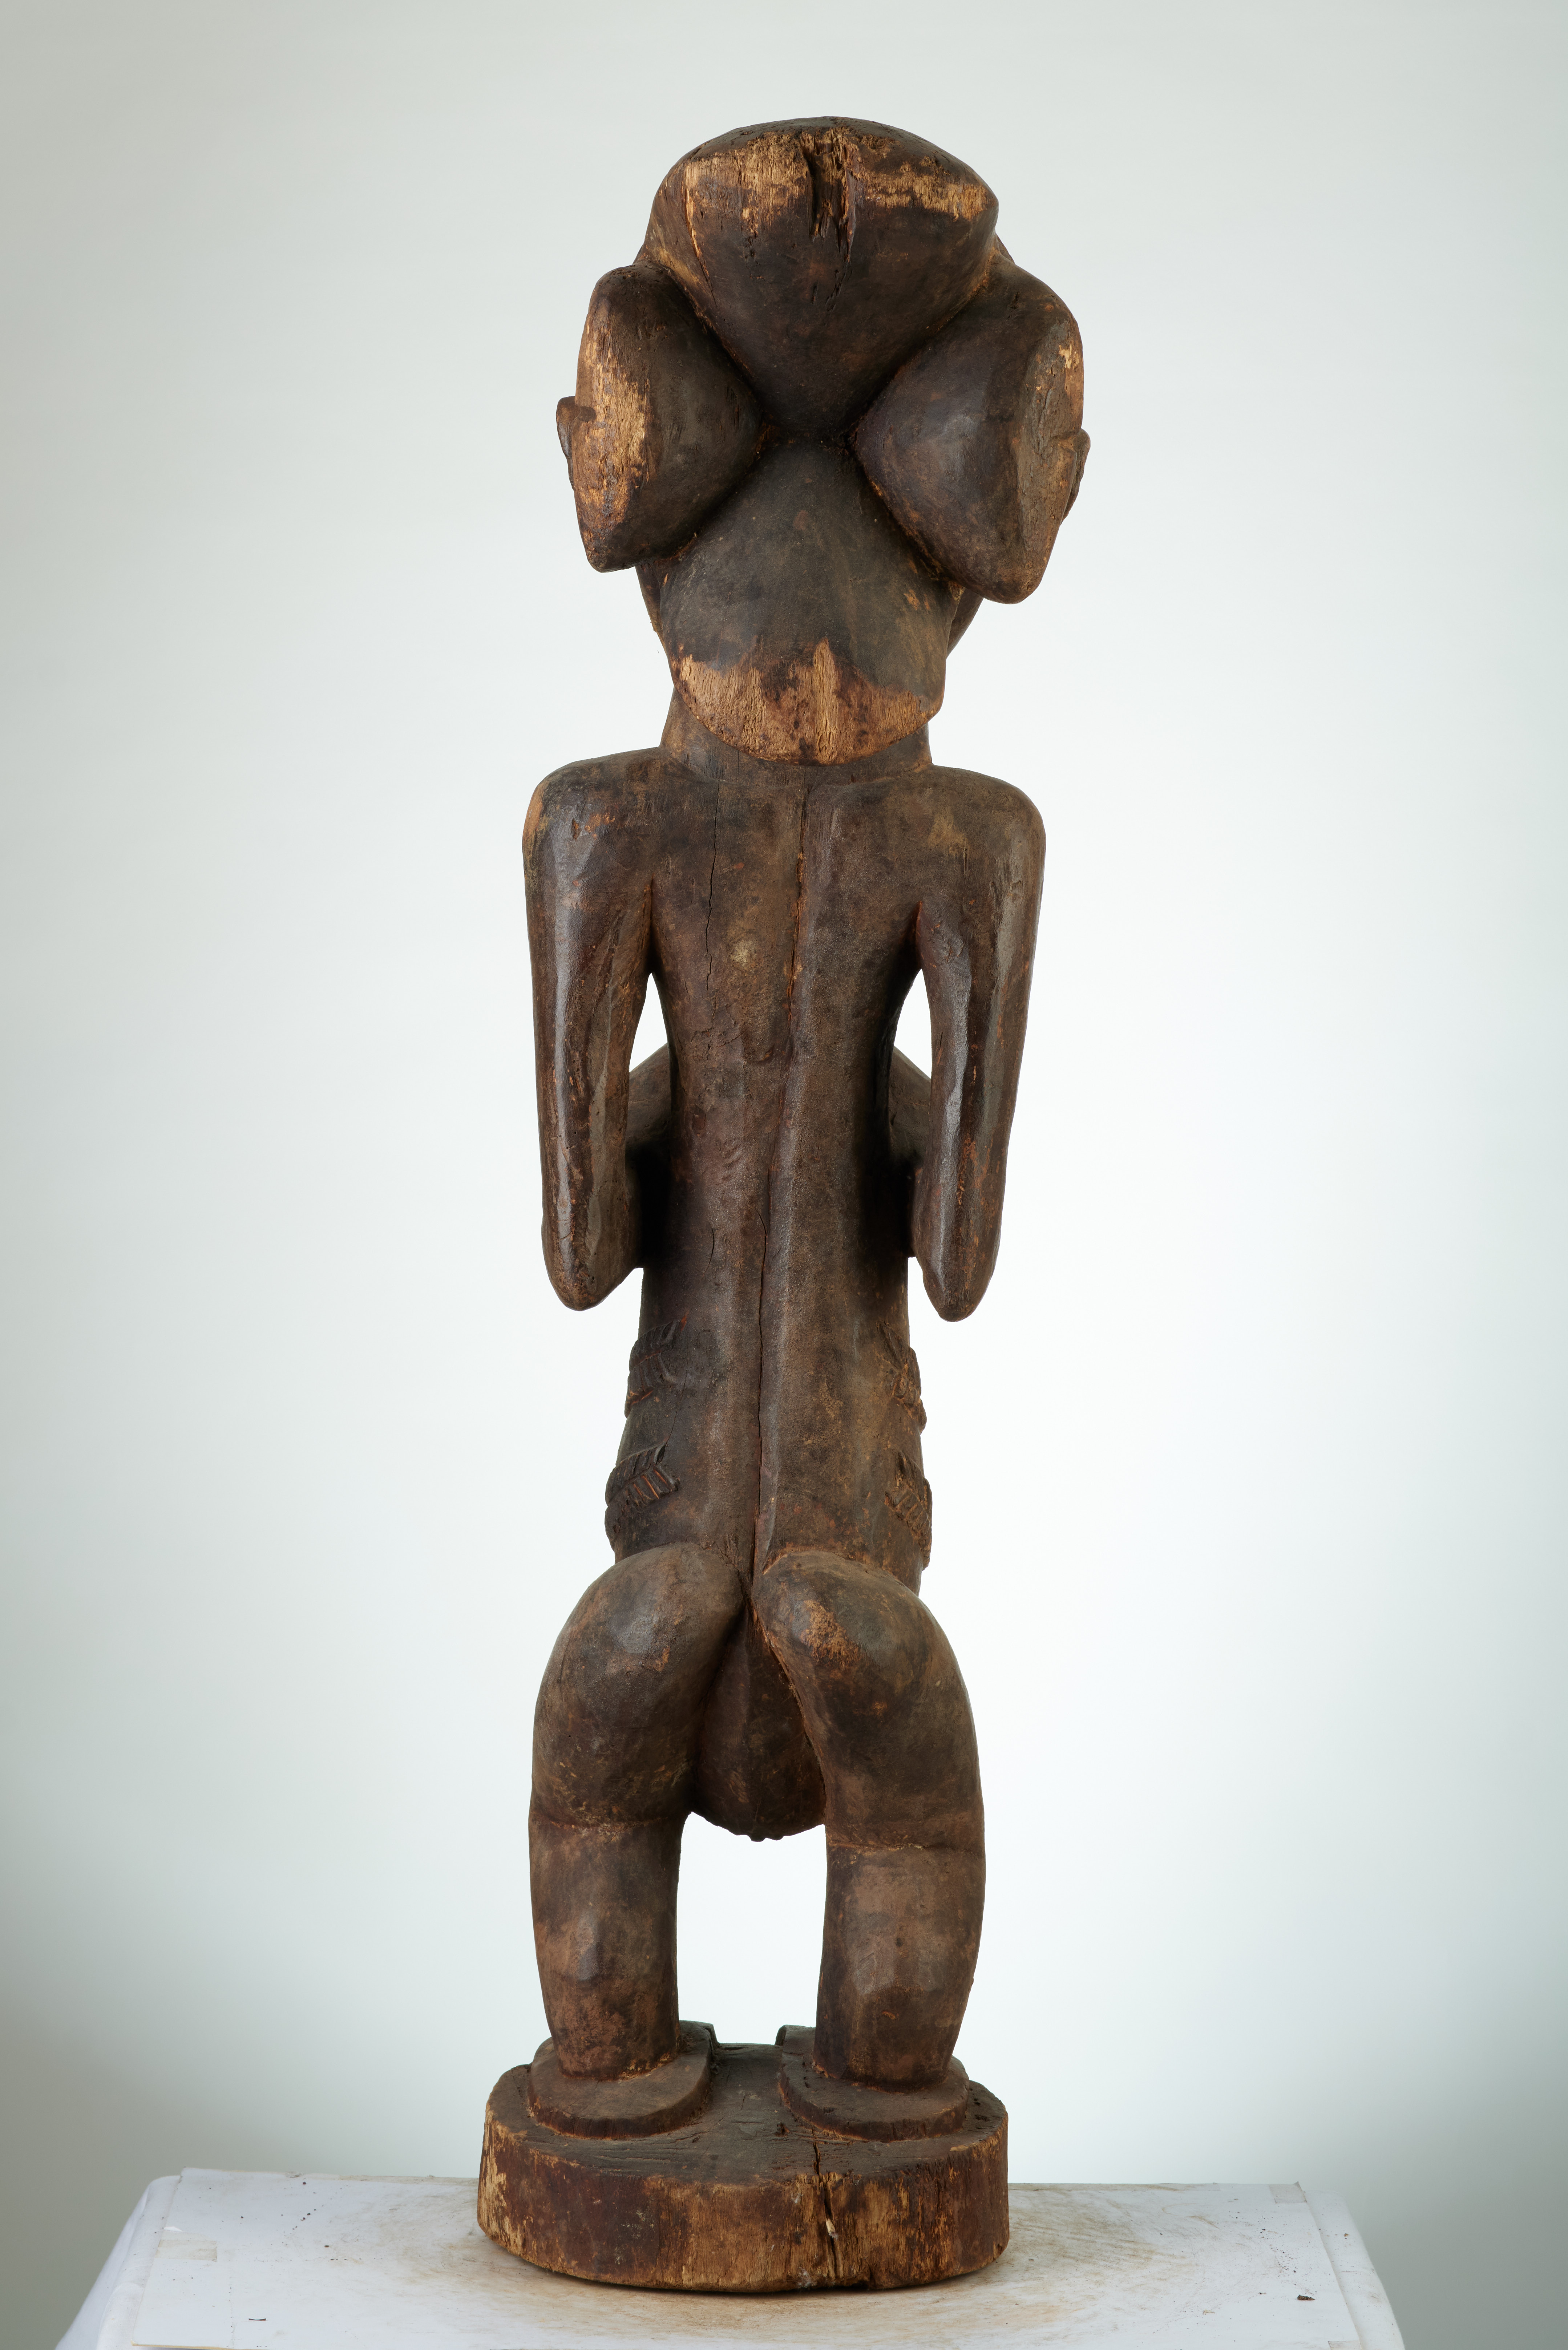 Hemba (Buli), d`afrique : RÃ©p.dÃ©moncratique du Congo., statuette Hemba (Buli), masque ancien africain Hemba (Buli), art du RÃ©p.dÃ©moncratique du Congo. - Art Africain, collection privÃ©es Belgique. Statue africaine de la tribu des Hemba (Buli), provenant du RÃ©p.dÃ©moncratique du Congo., 1485/1278 TrÃ¨s belle statue Hemba de style Buli h.85cm. village Katutu le long de la riviÃ¨re rÃ©gion de Kabalo.Le chef est/Ngoy Mwilambwe. Elle reprÃ©sente une femme debout les deux mains sur la poitrine,sa coiffure est quadri lobÃ©e en forme en croix.dÃ©but du 20eme sc.l